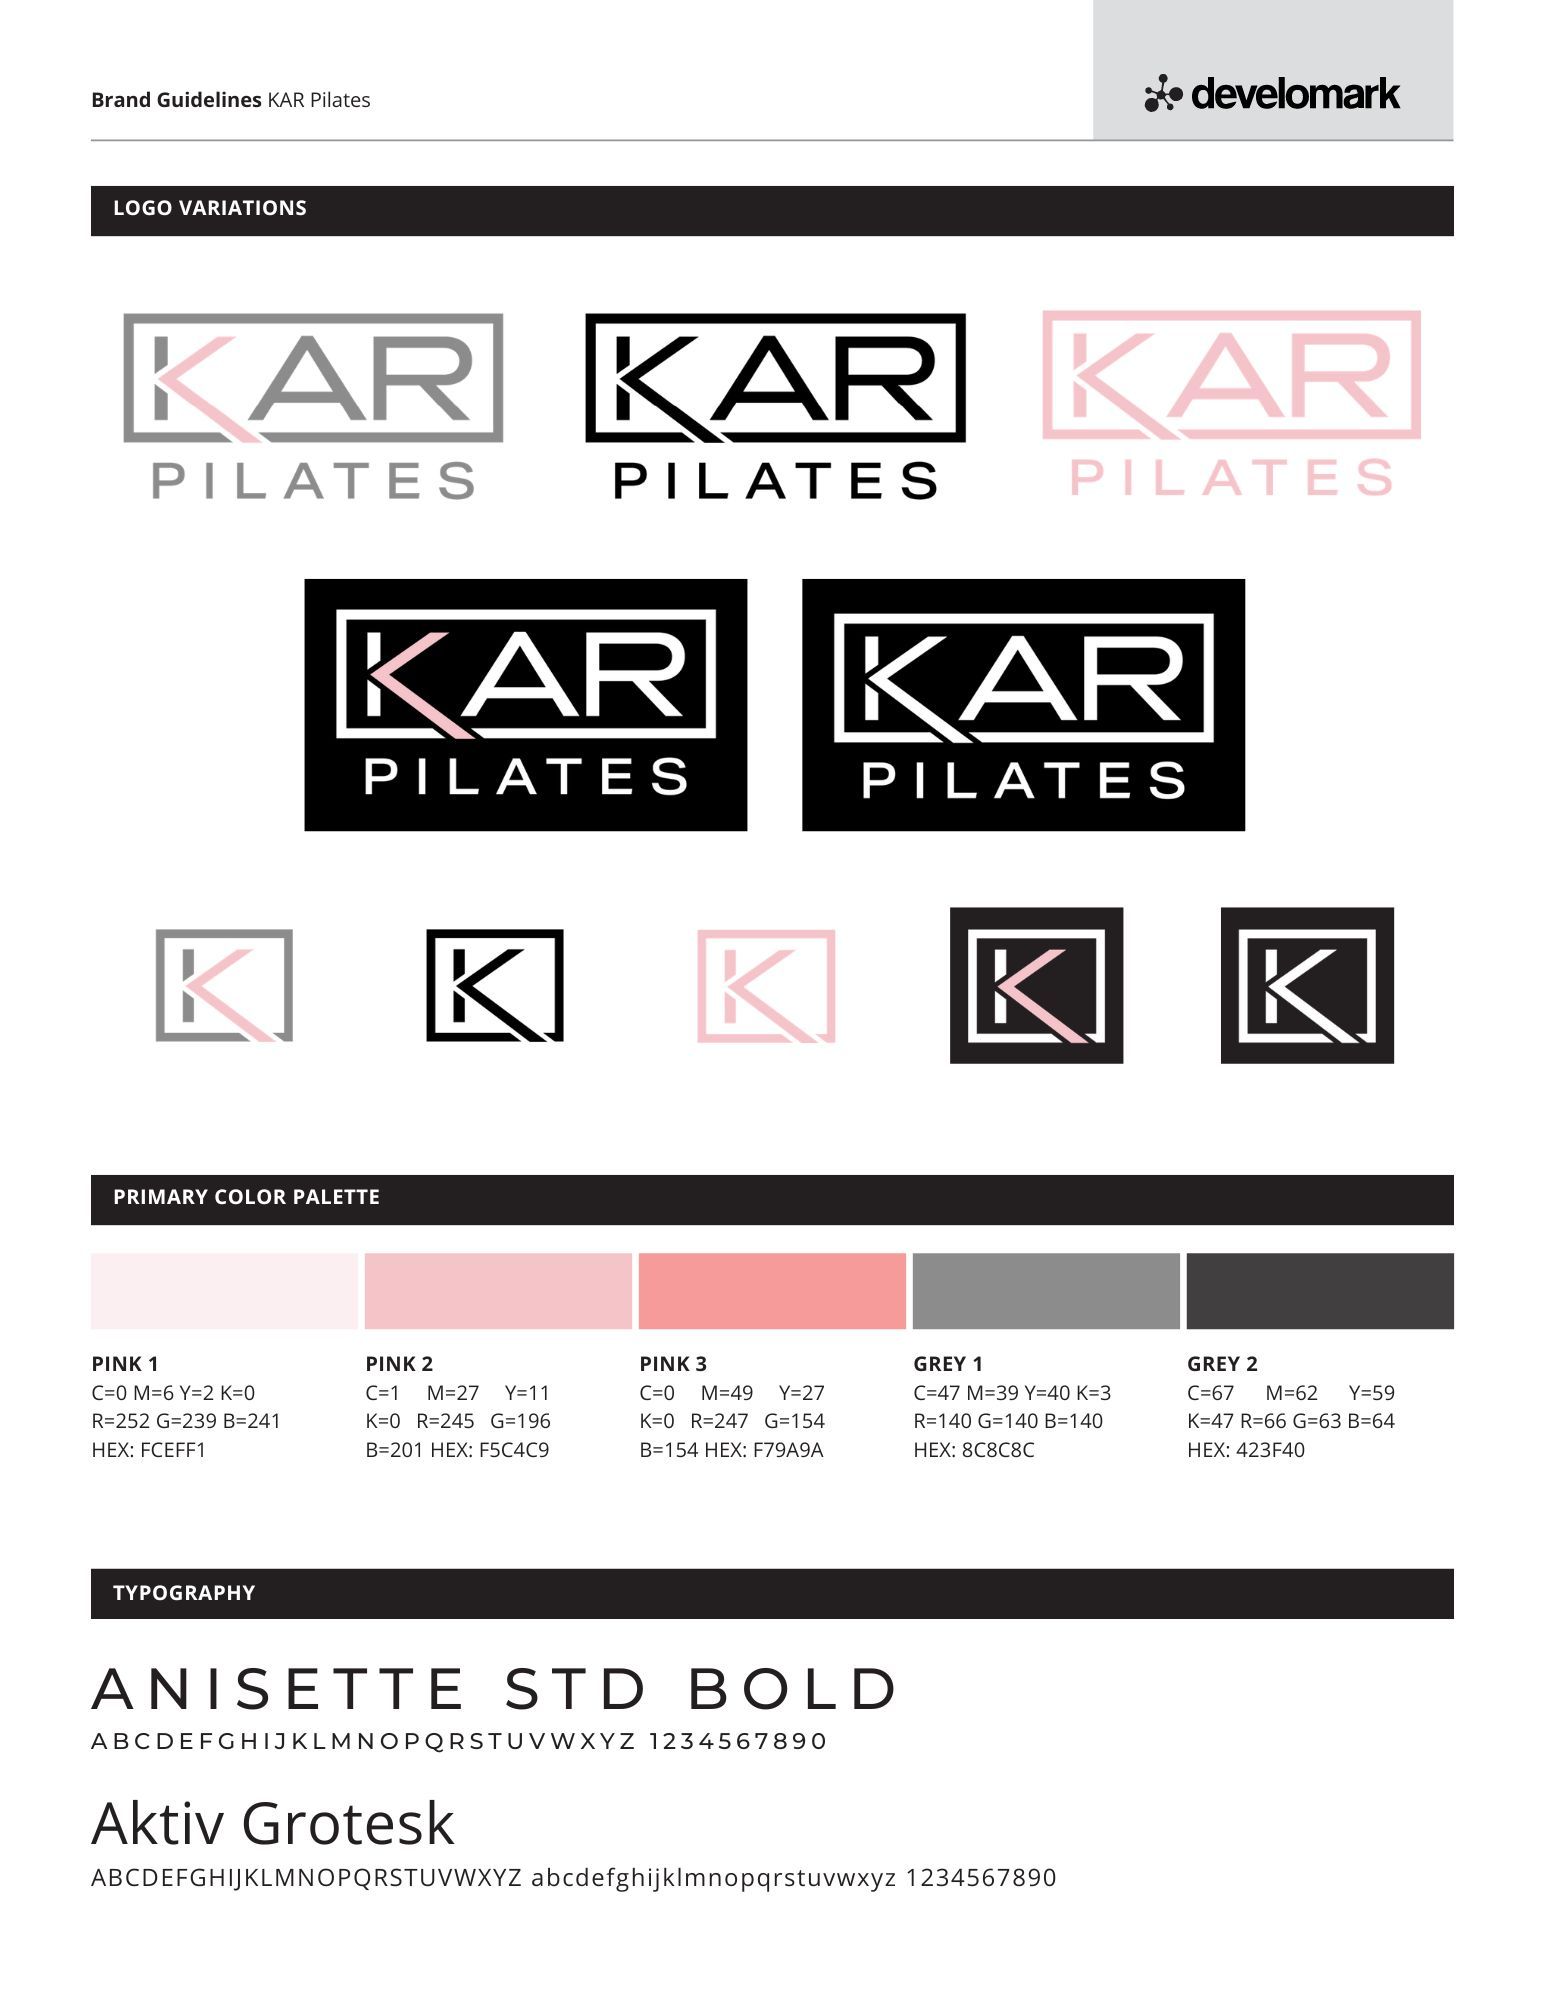 KAR Pilates branding